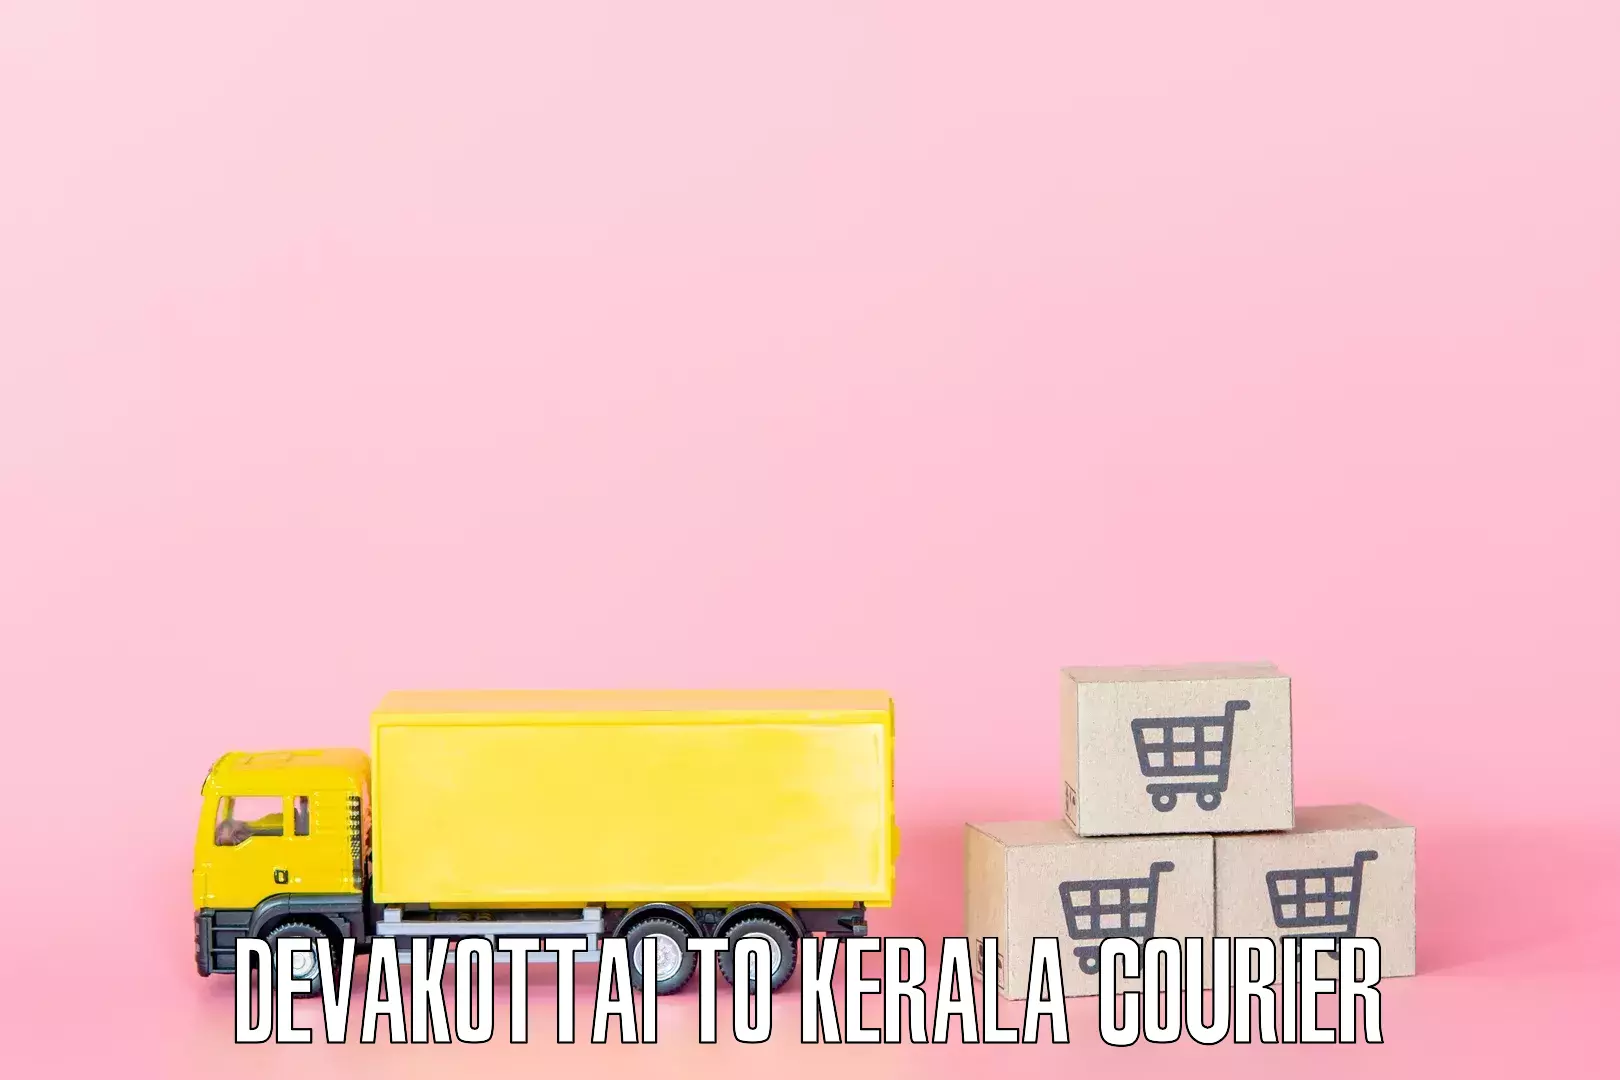 Home shifting experts Devakottai to Kerala